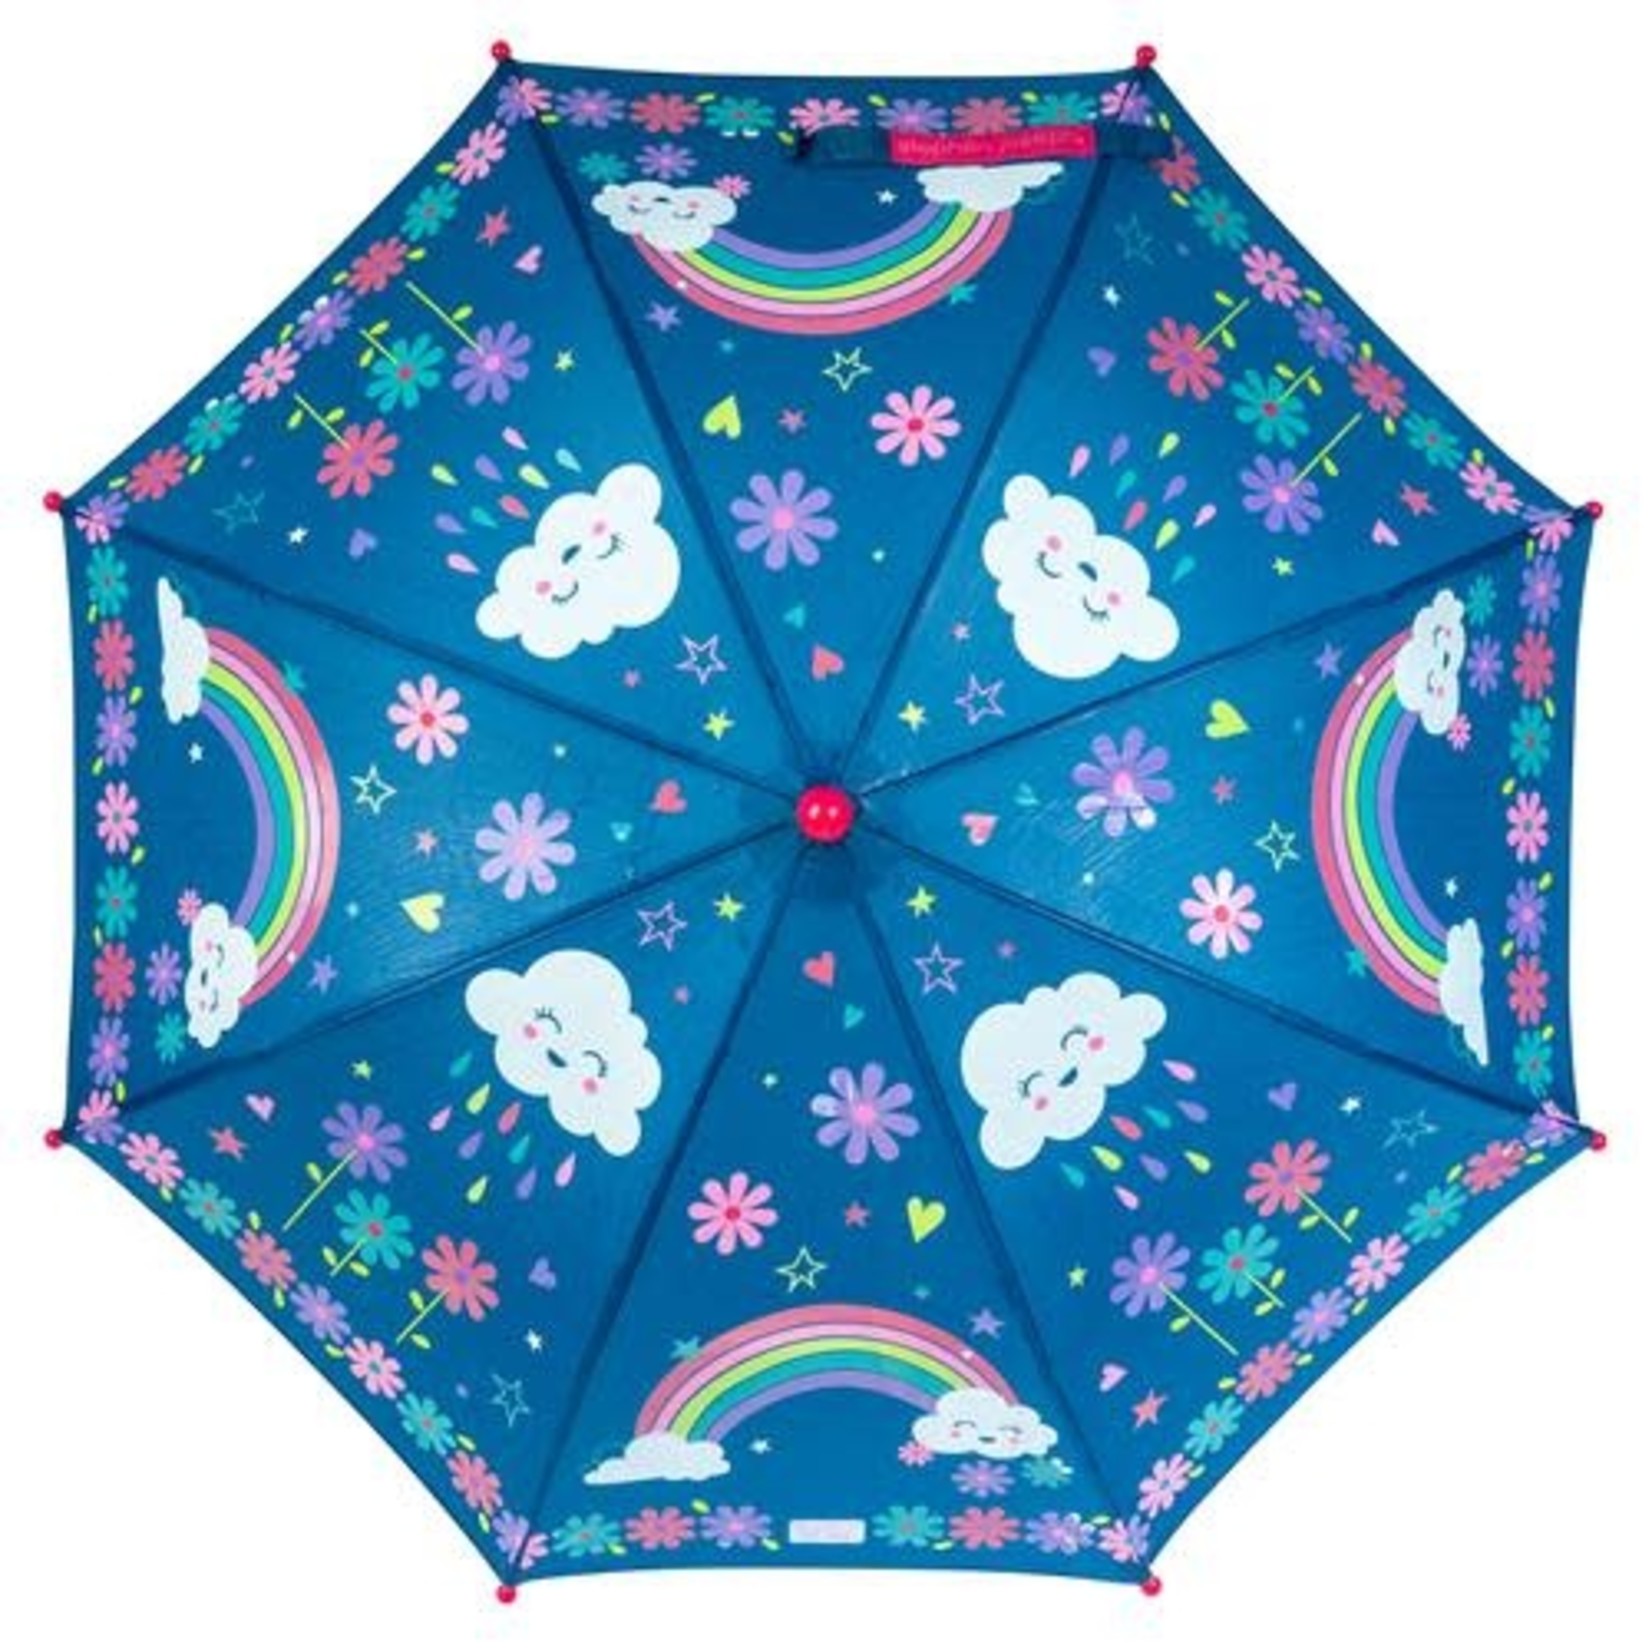 Stephen Joseph Parapluie changeant de couleur - Arc-en-ciel